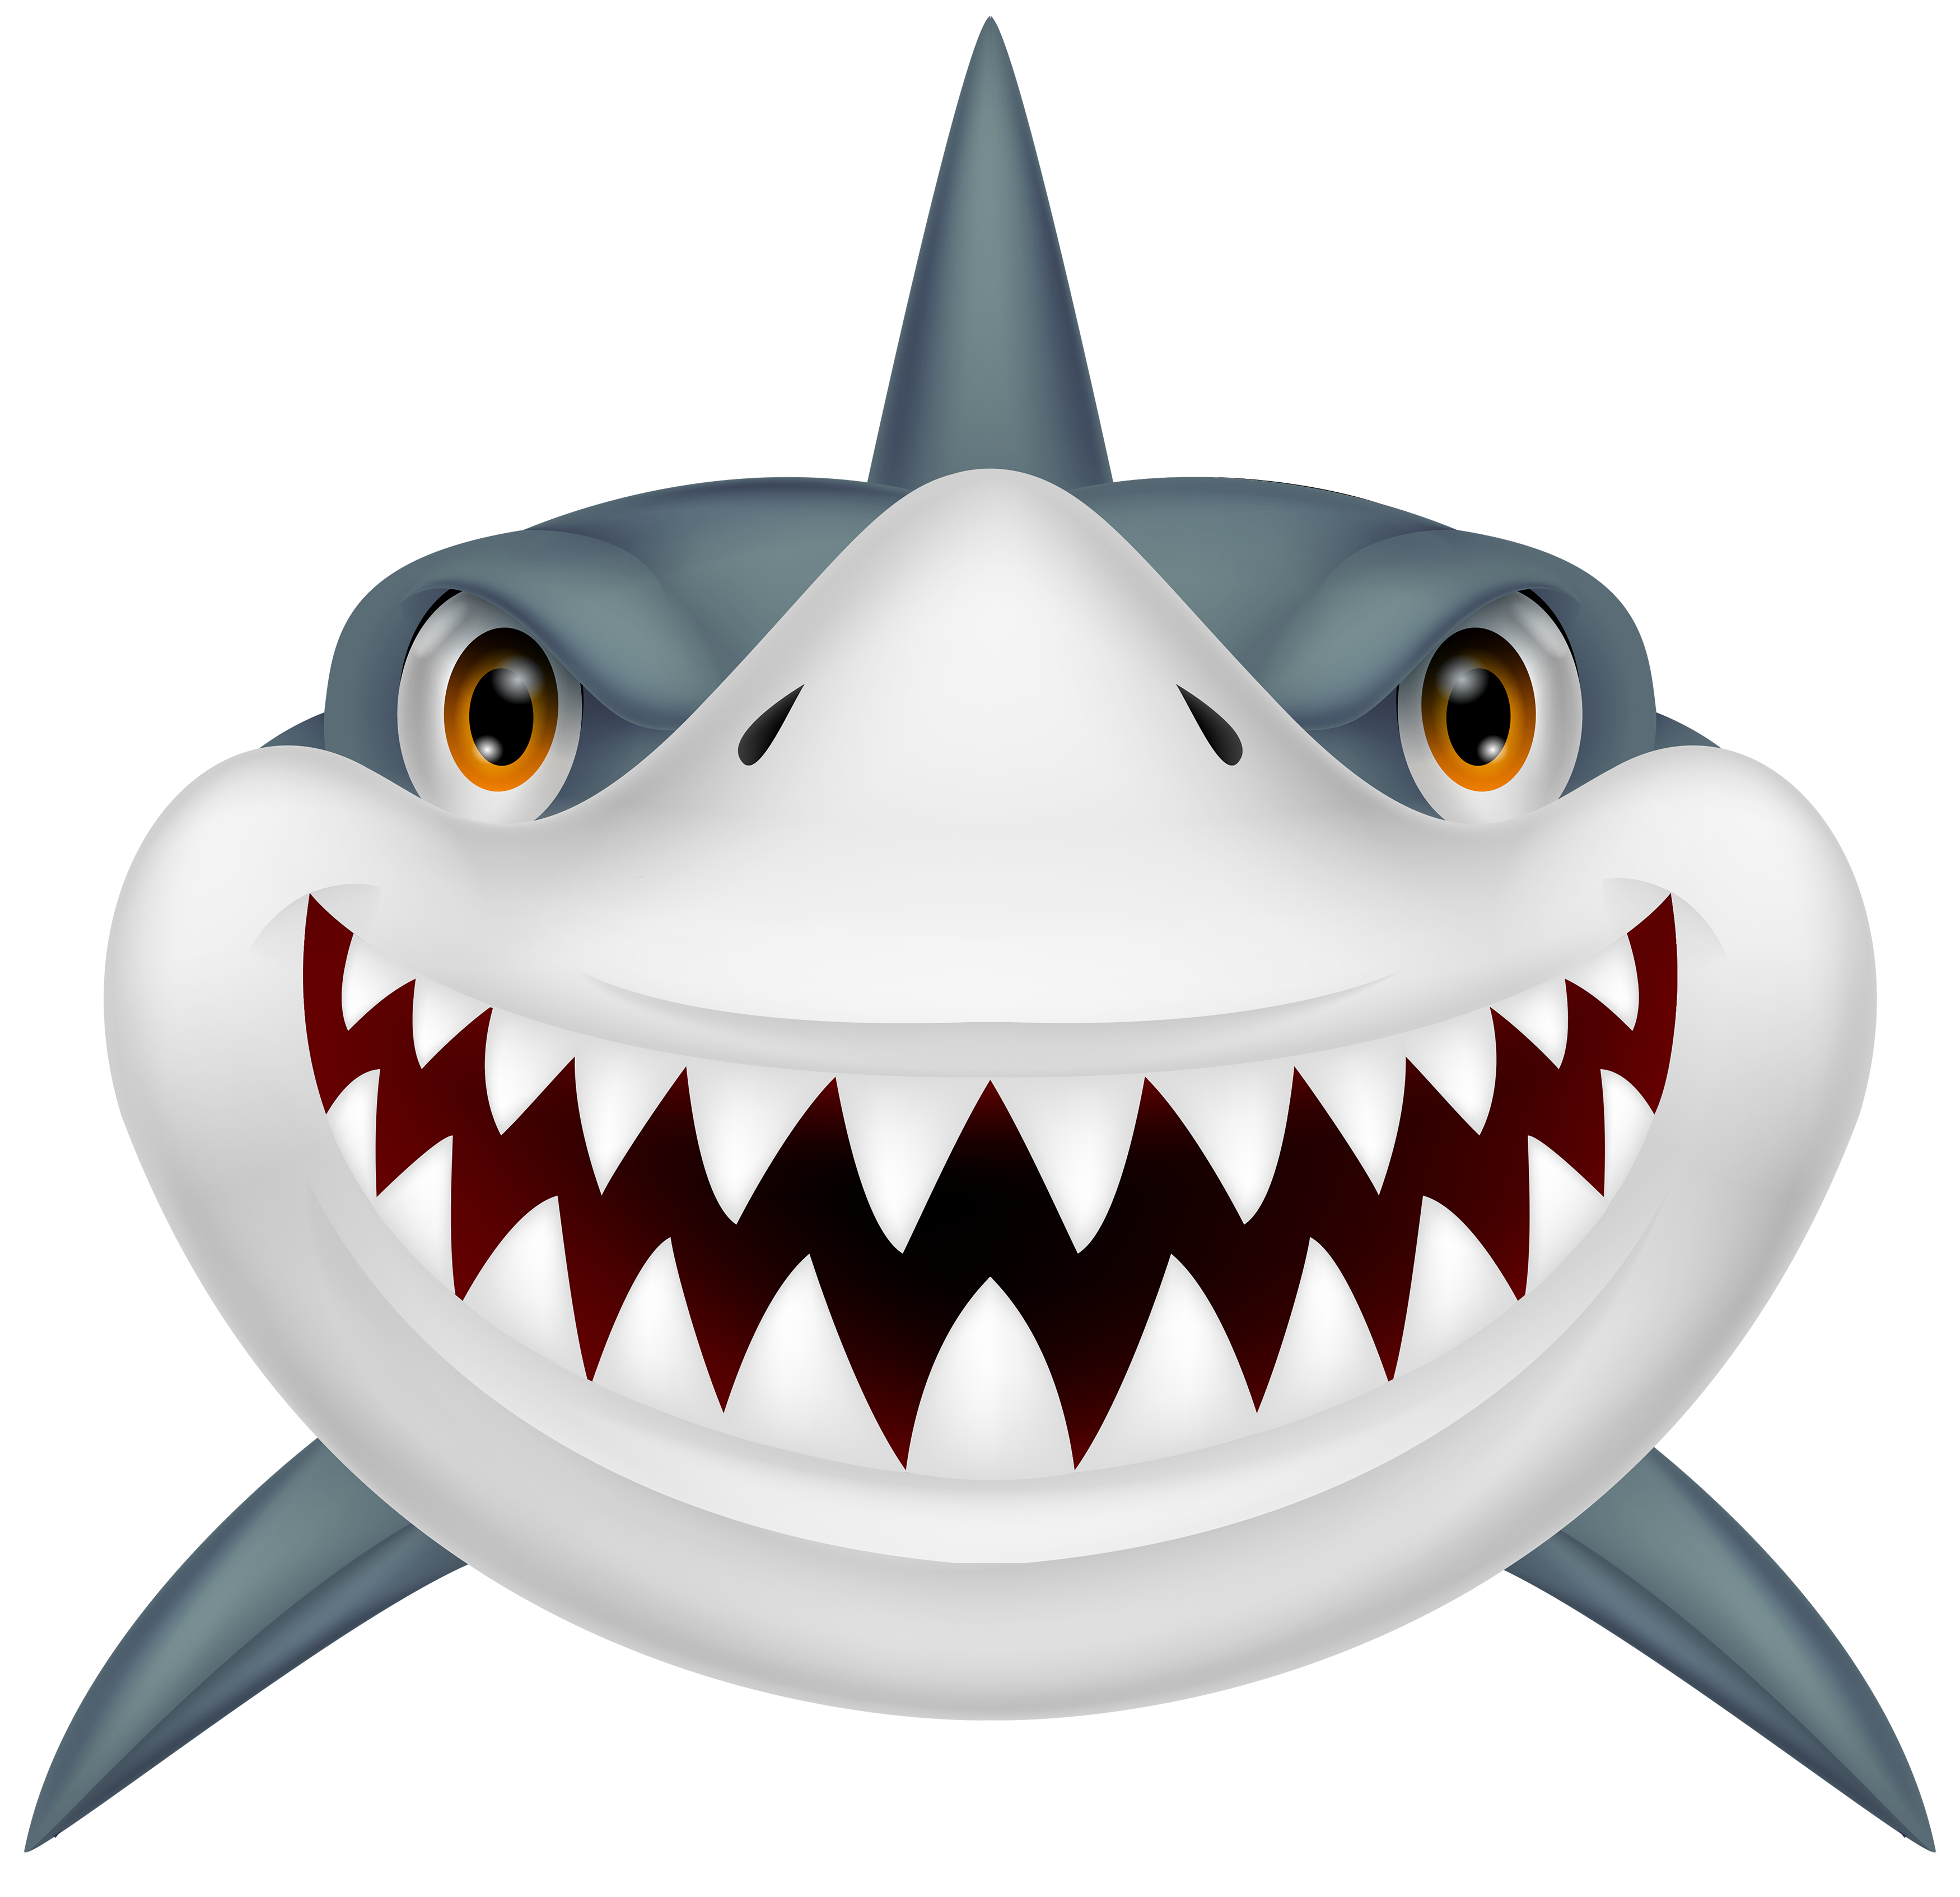 60 Free Shark Clipart - Cliparting.com